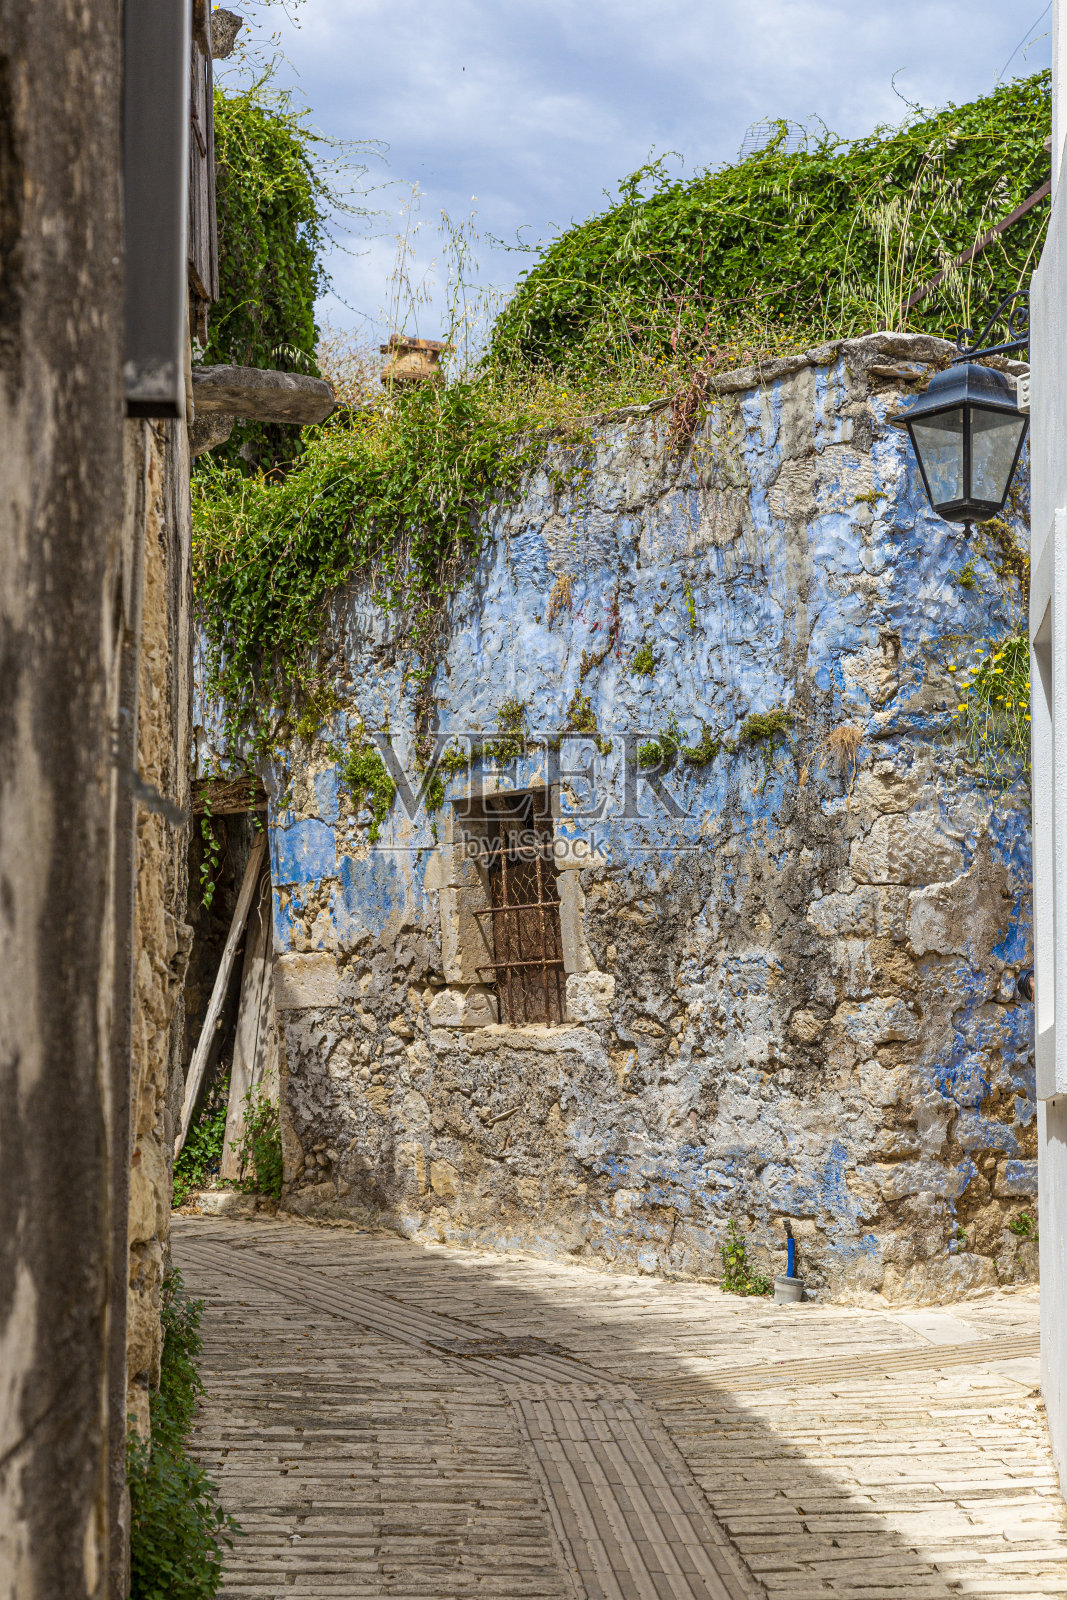 这是克里特岛上一个古老的希腊村庄白天的街道景象照片摄影图片